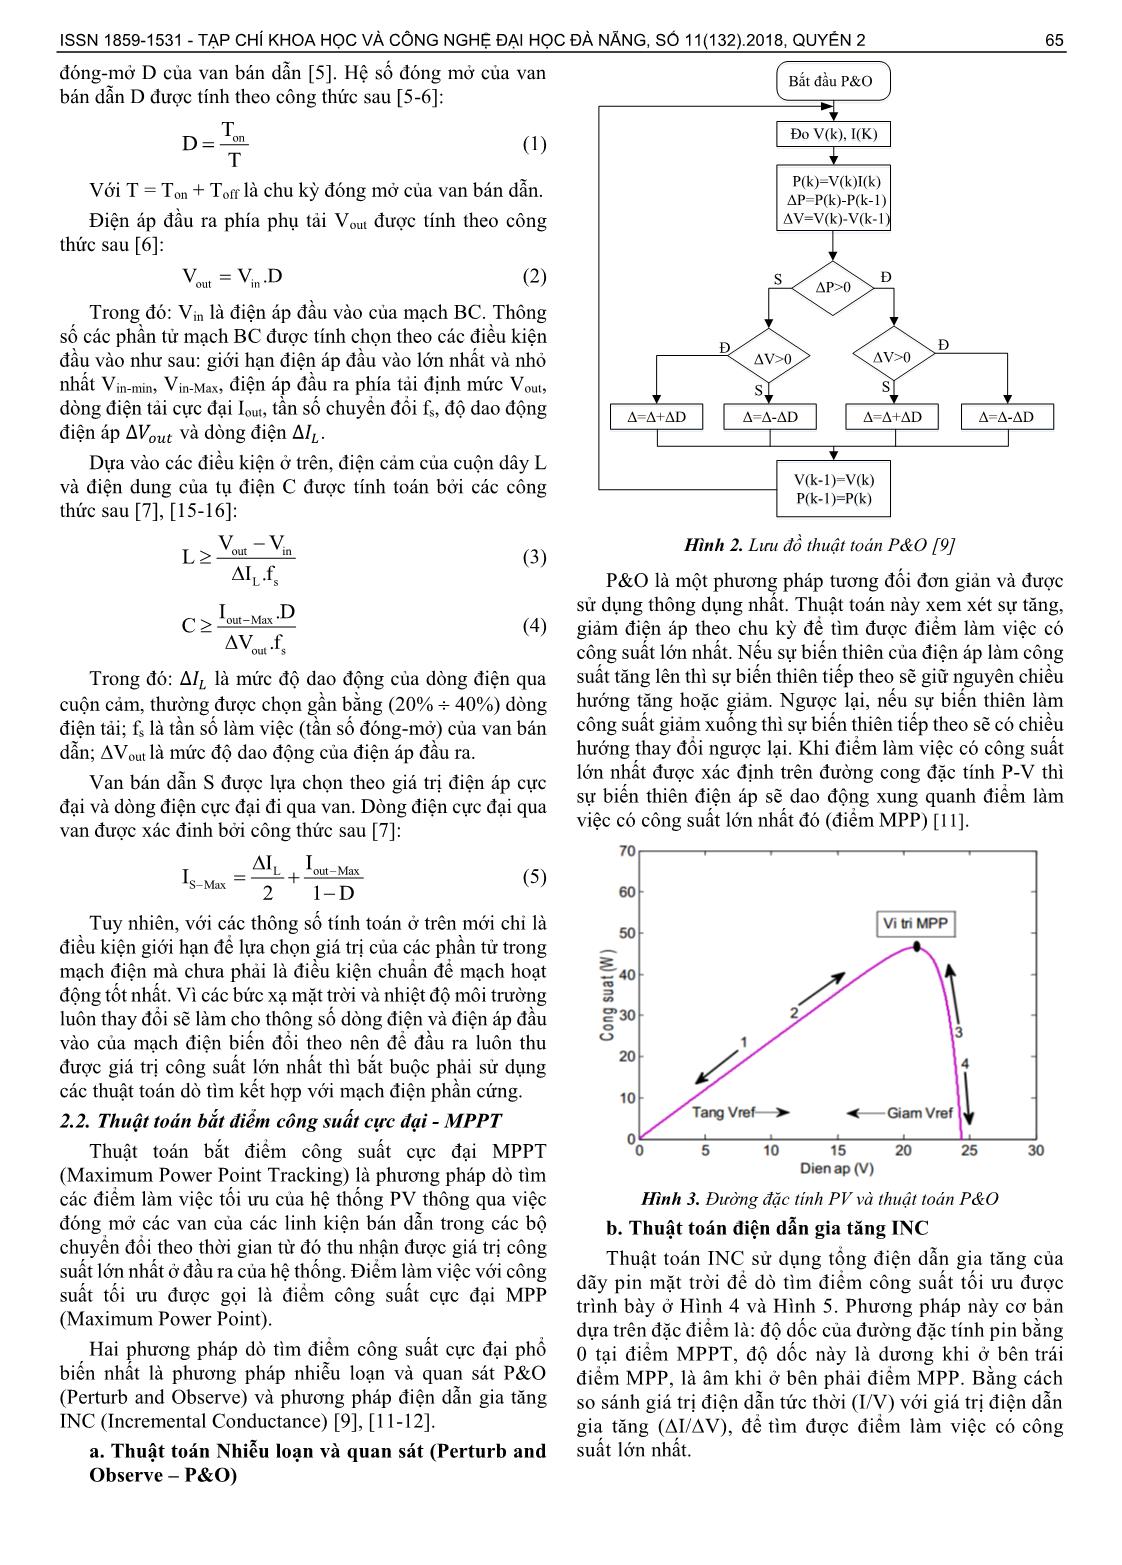 So sánh các thuật toán bắt điểm công suất cực đại bằng phương pháp mô phỏng và thực nghiệm trang 2